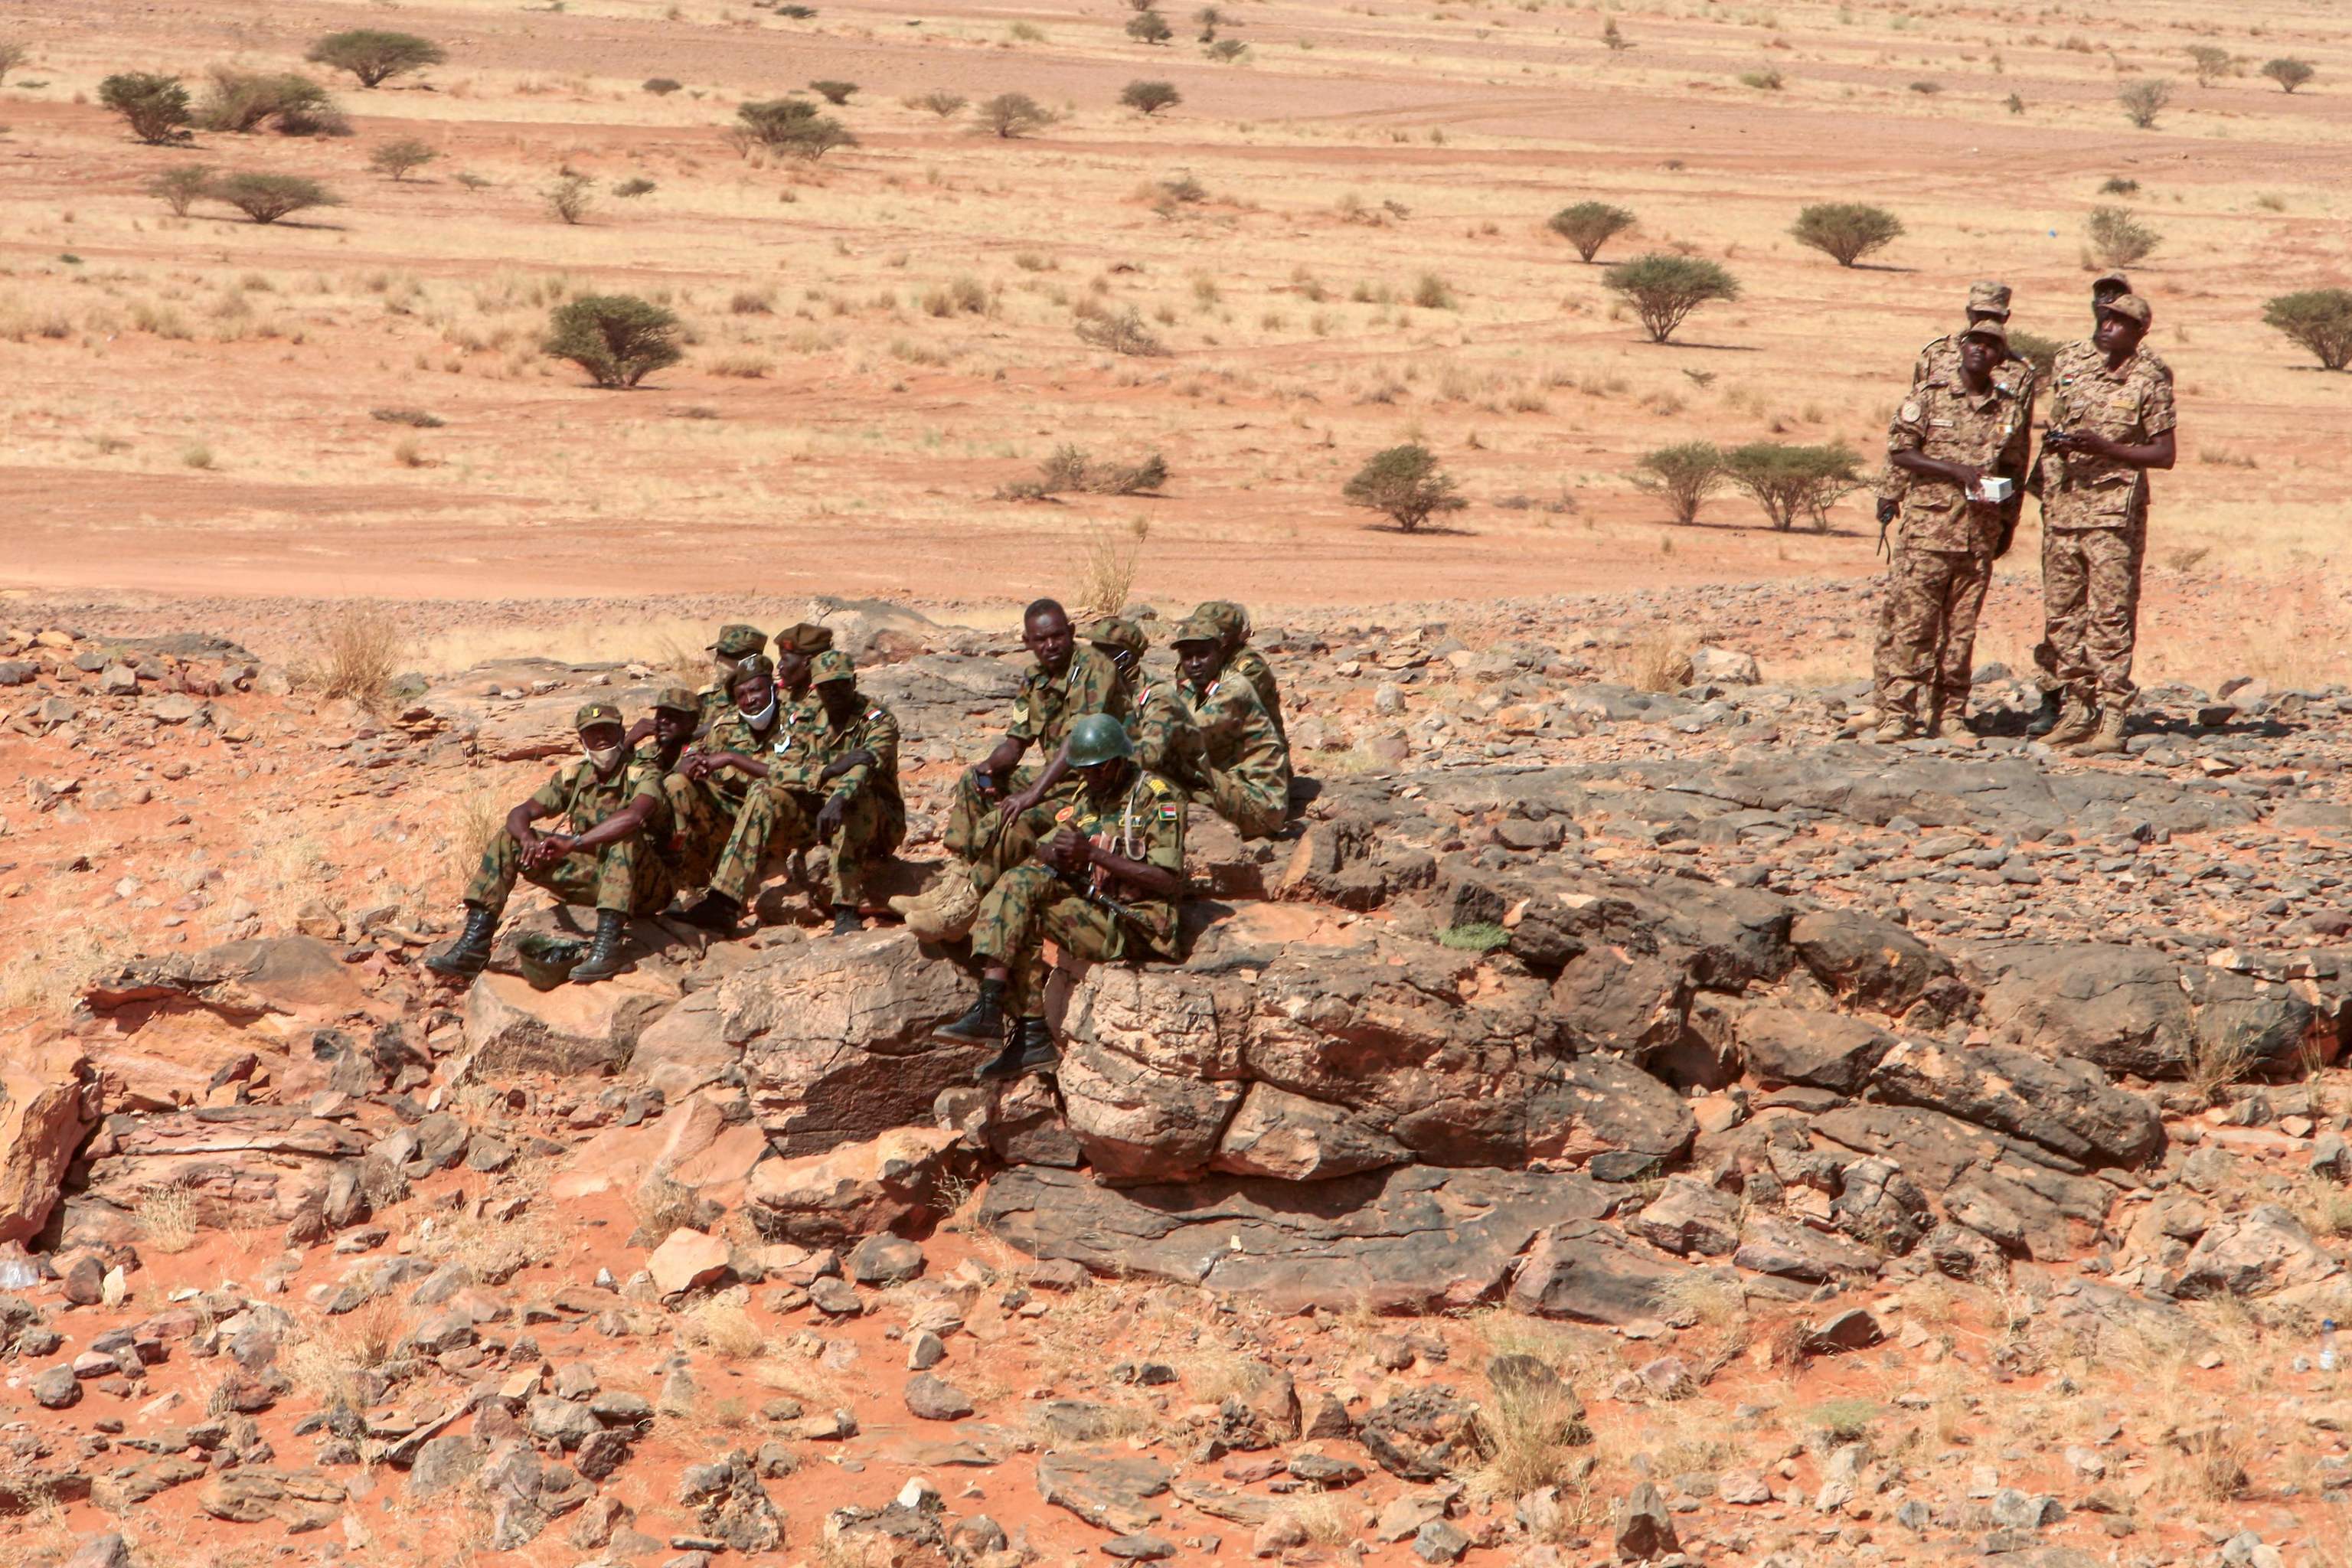 Soldados en Sudn, cerca del Nilo.